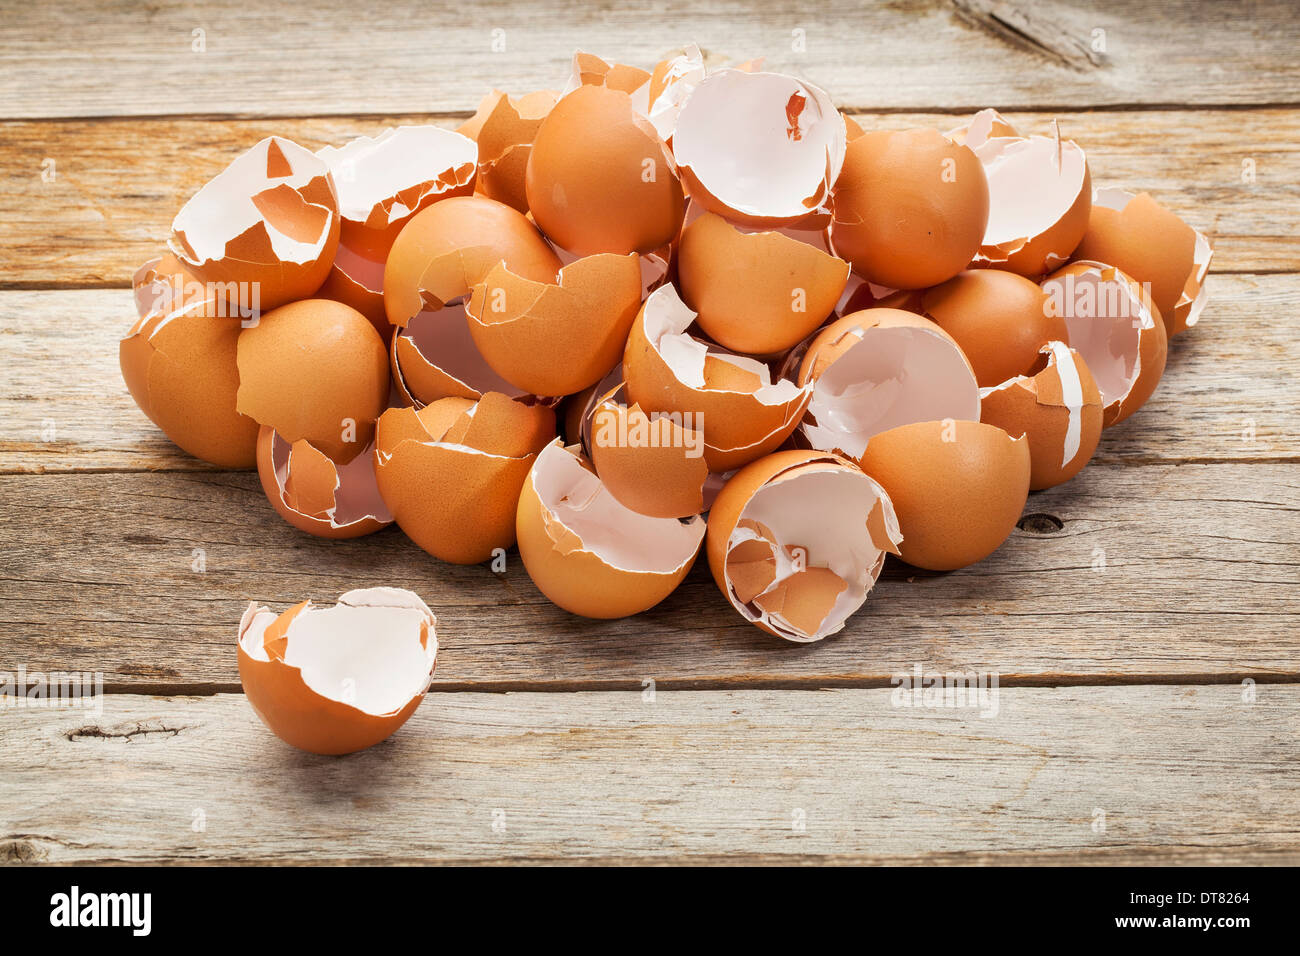 Un montón de cáscaras de huevo de pollo marrón blanco roto sobre una tabla de madera rústica Foto de stock